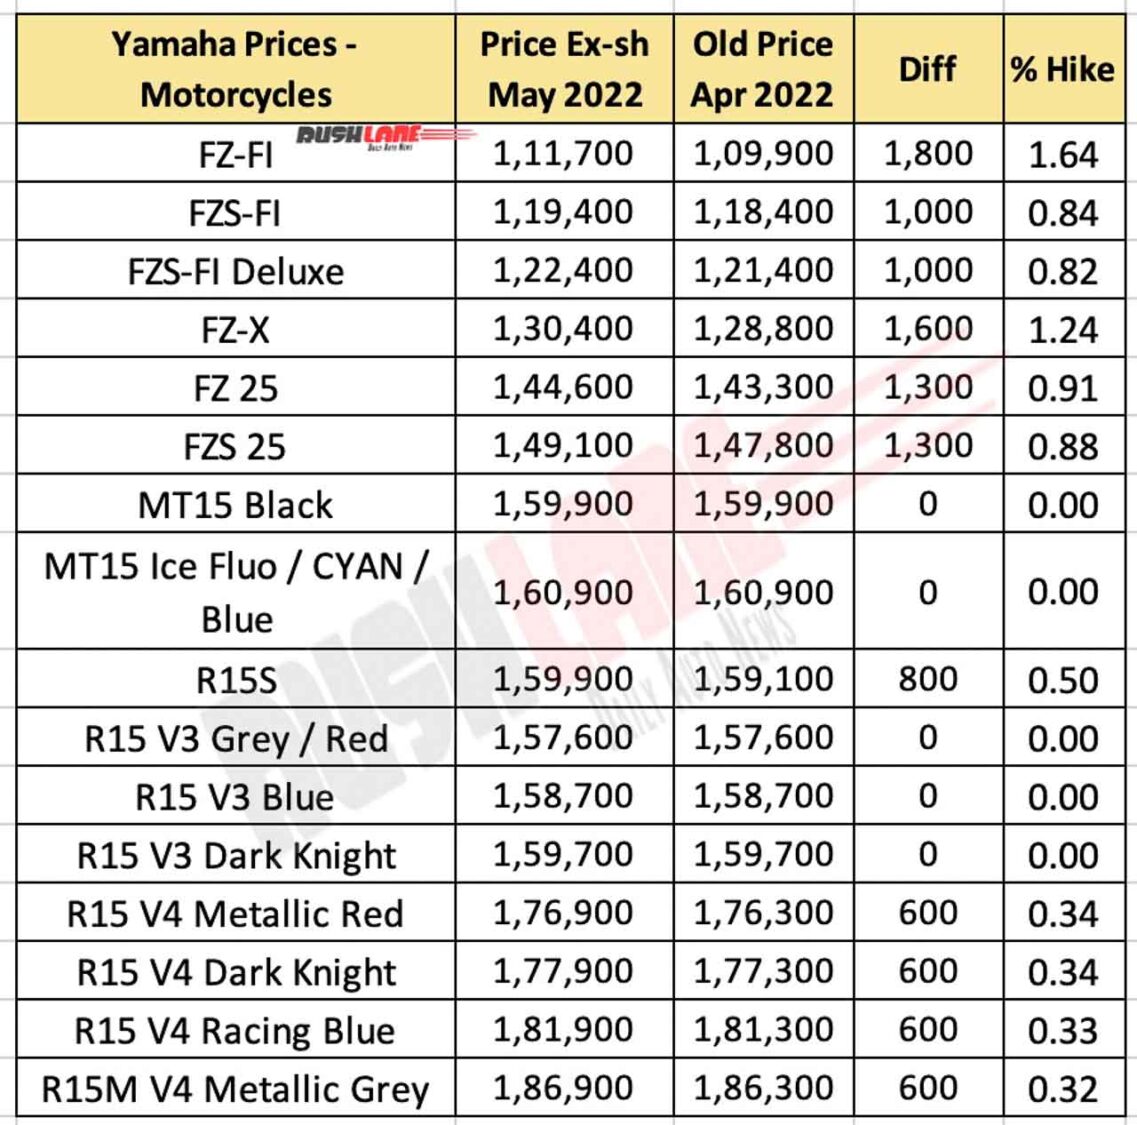 Yamaha Motorcycle Prices May 2022